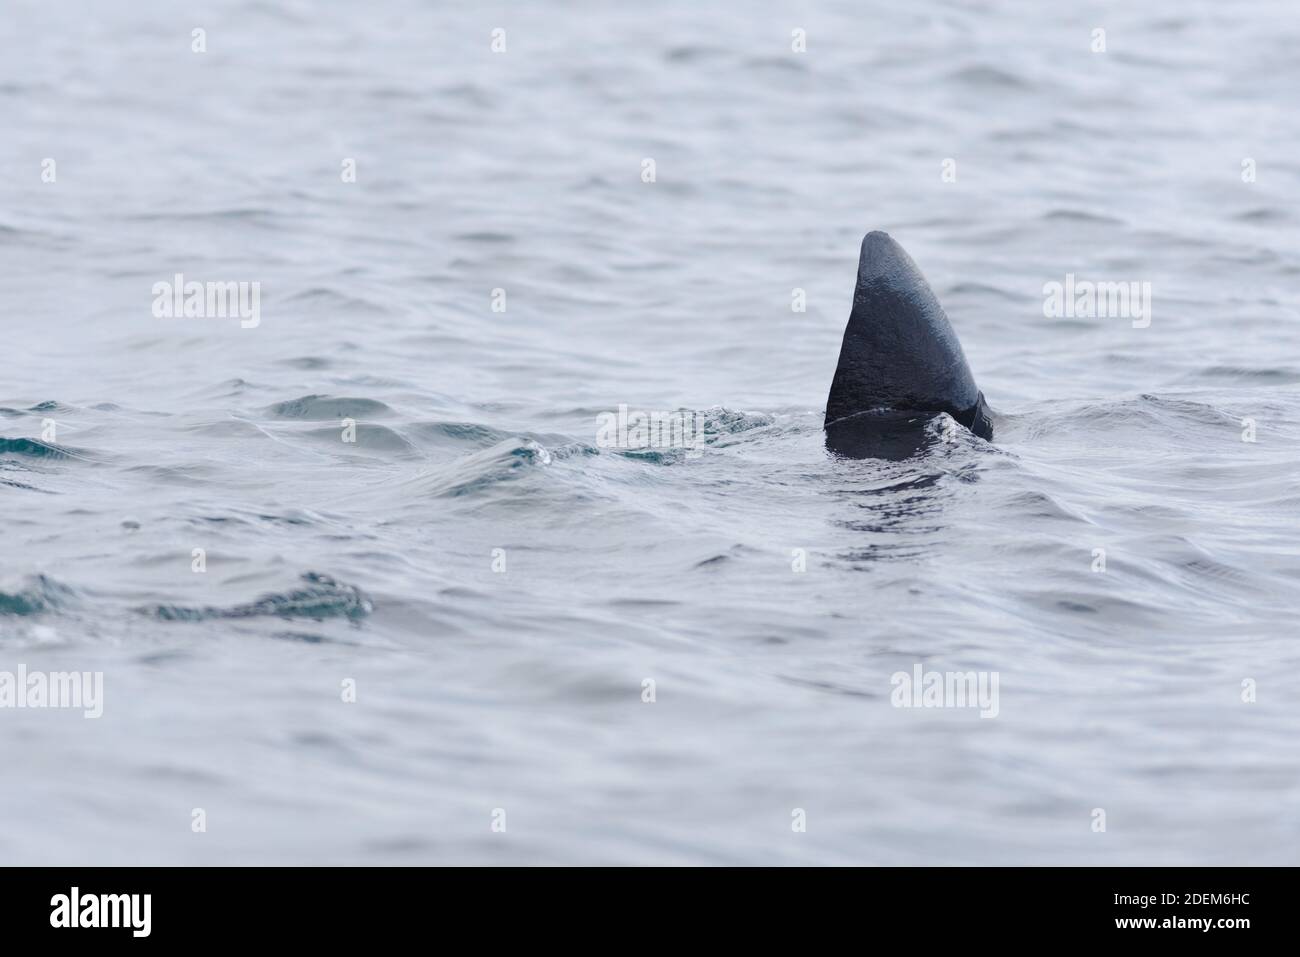 3 - immagine nitida della pinna dorsale nera scura di uno squalo che nuotava fuori dalla cornice. Lo sfondo ondulato dell'acqua rende lo squalo più evidente. Foto Stock